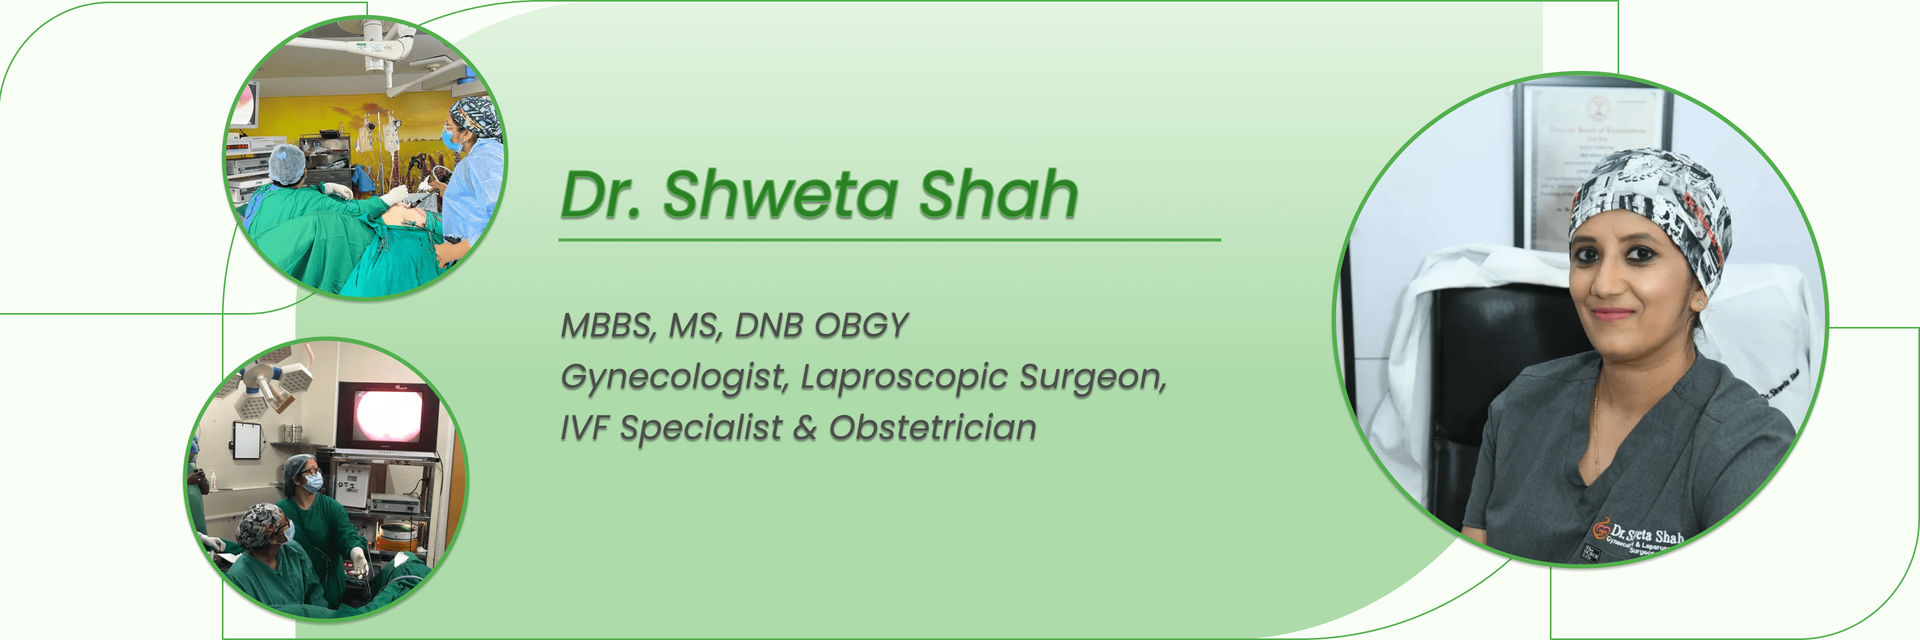 Meet Dr. Shweta Shah — A Dementia And Menopause Expert